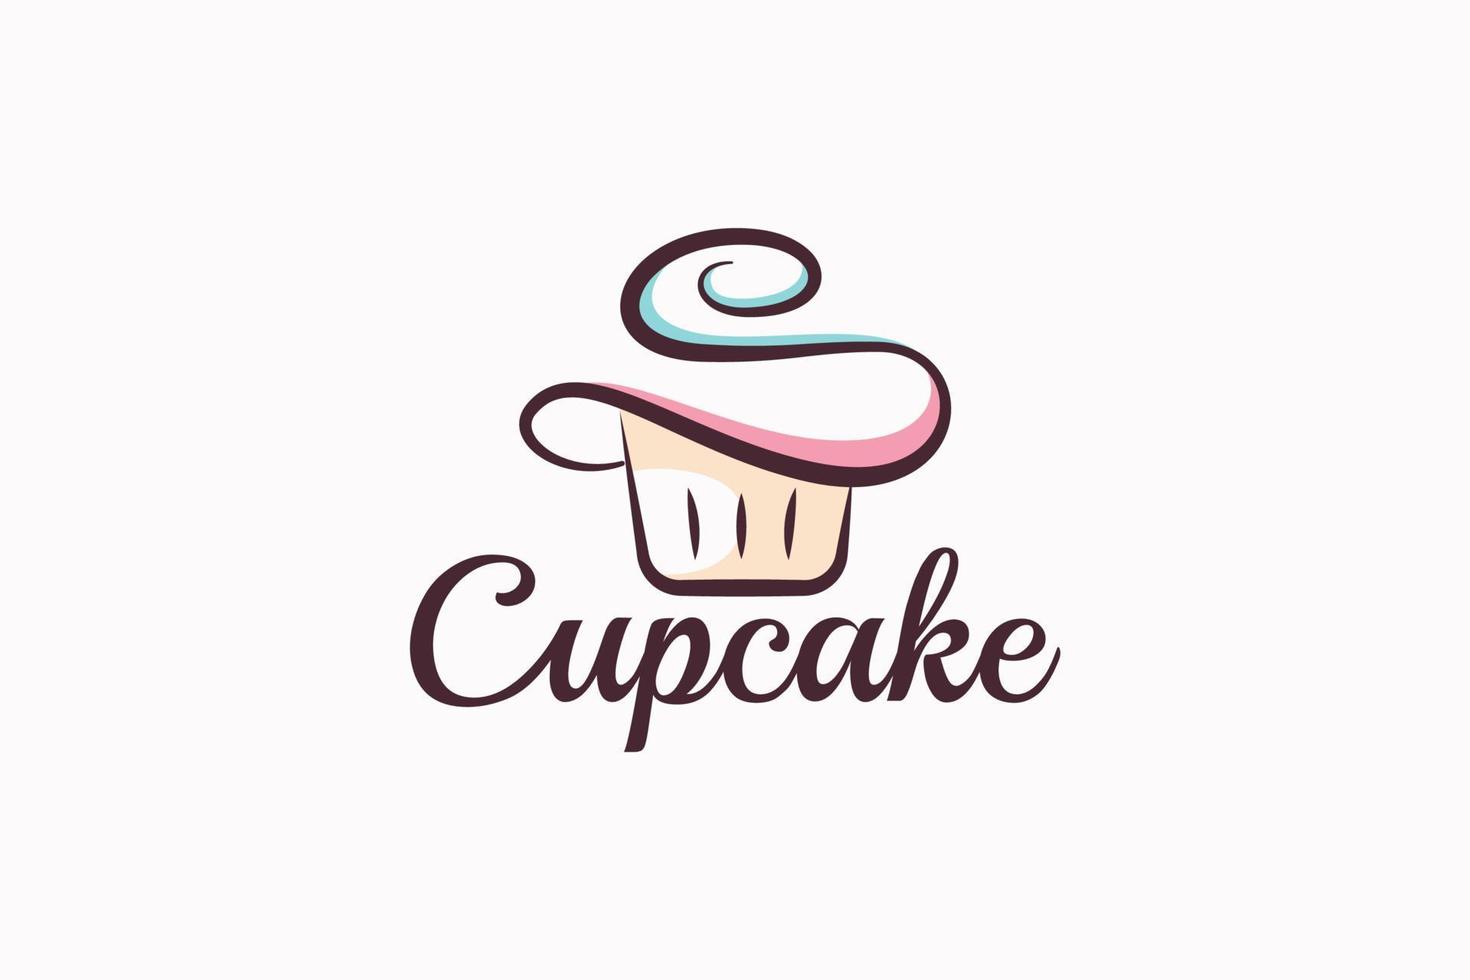 petit gâteau logo avec une combinaison de styliste petit gâteau et lettre s pour tout entreprise, surtout pour boulangeries, pâtisseries, café, etc. vecteur